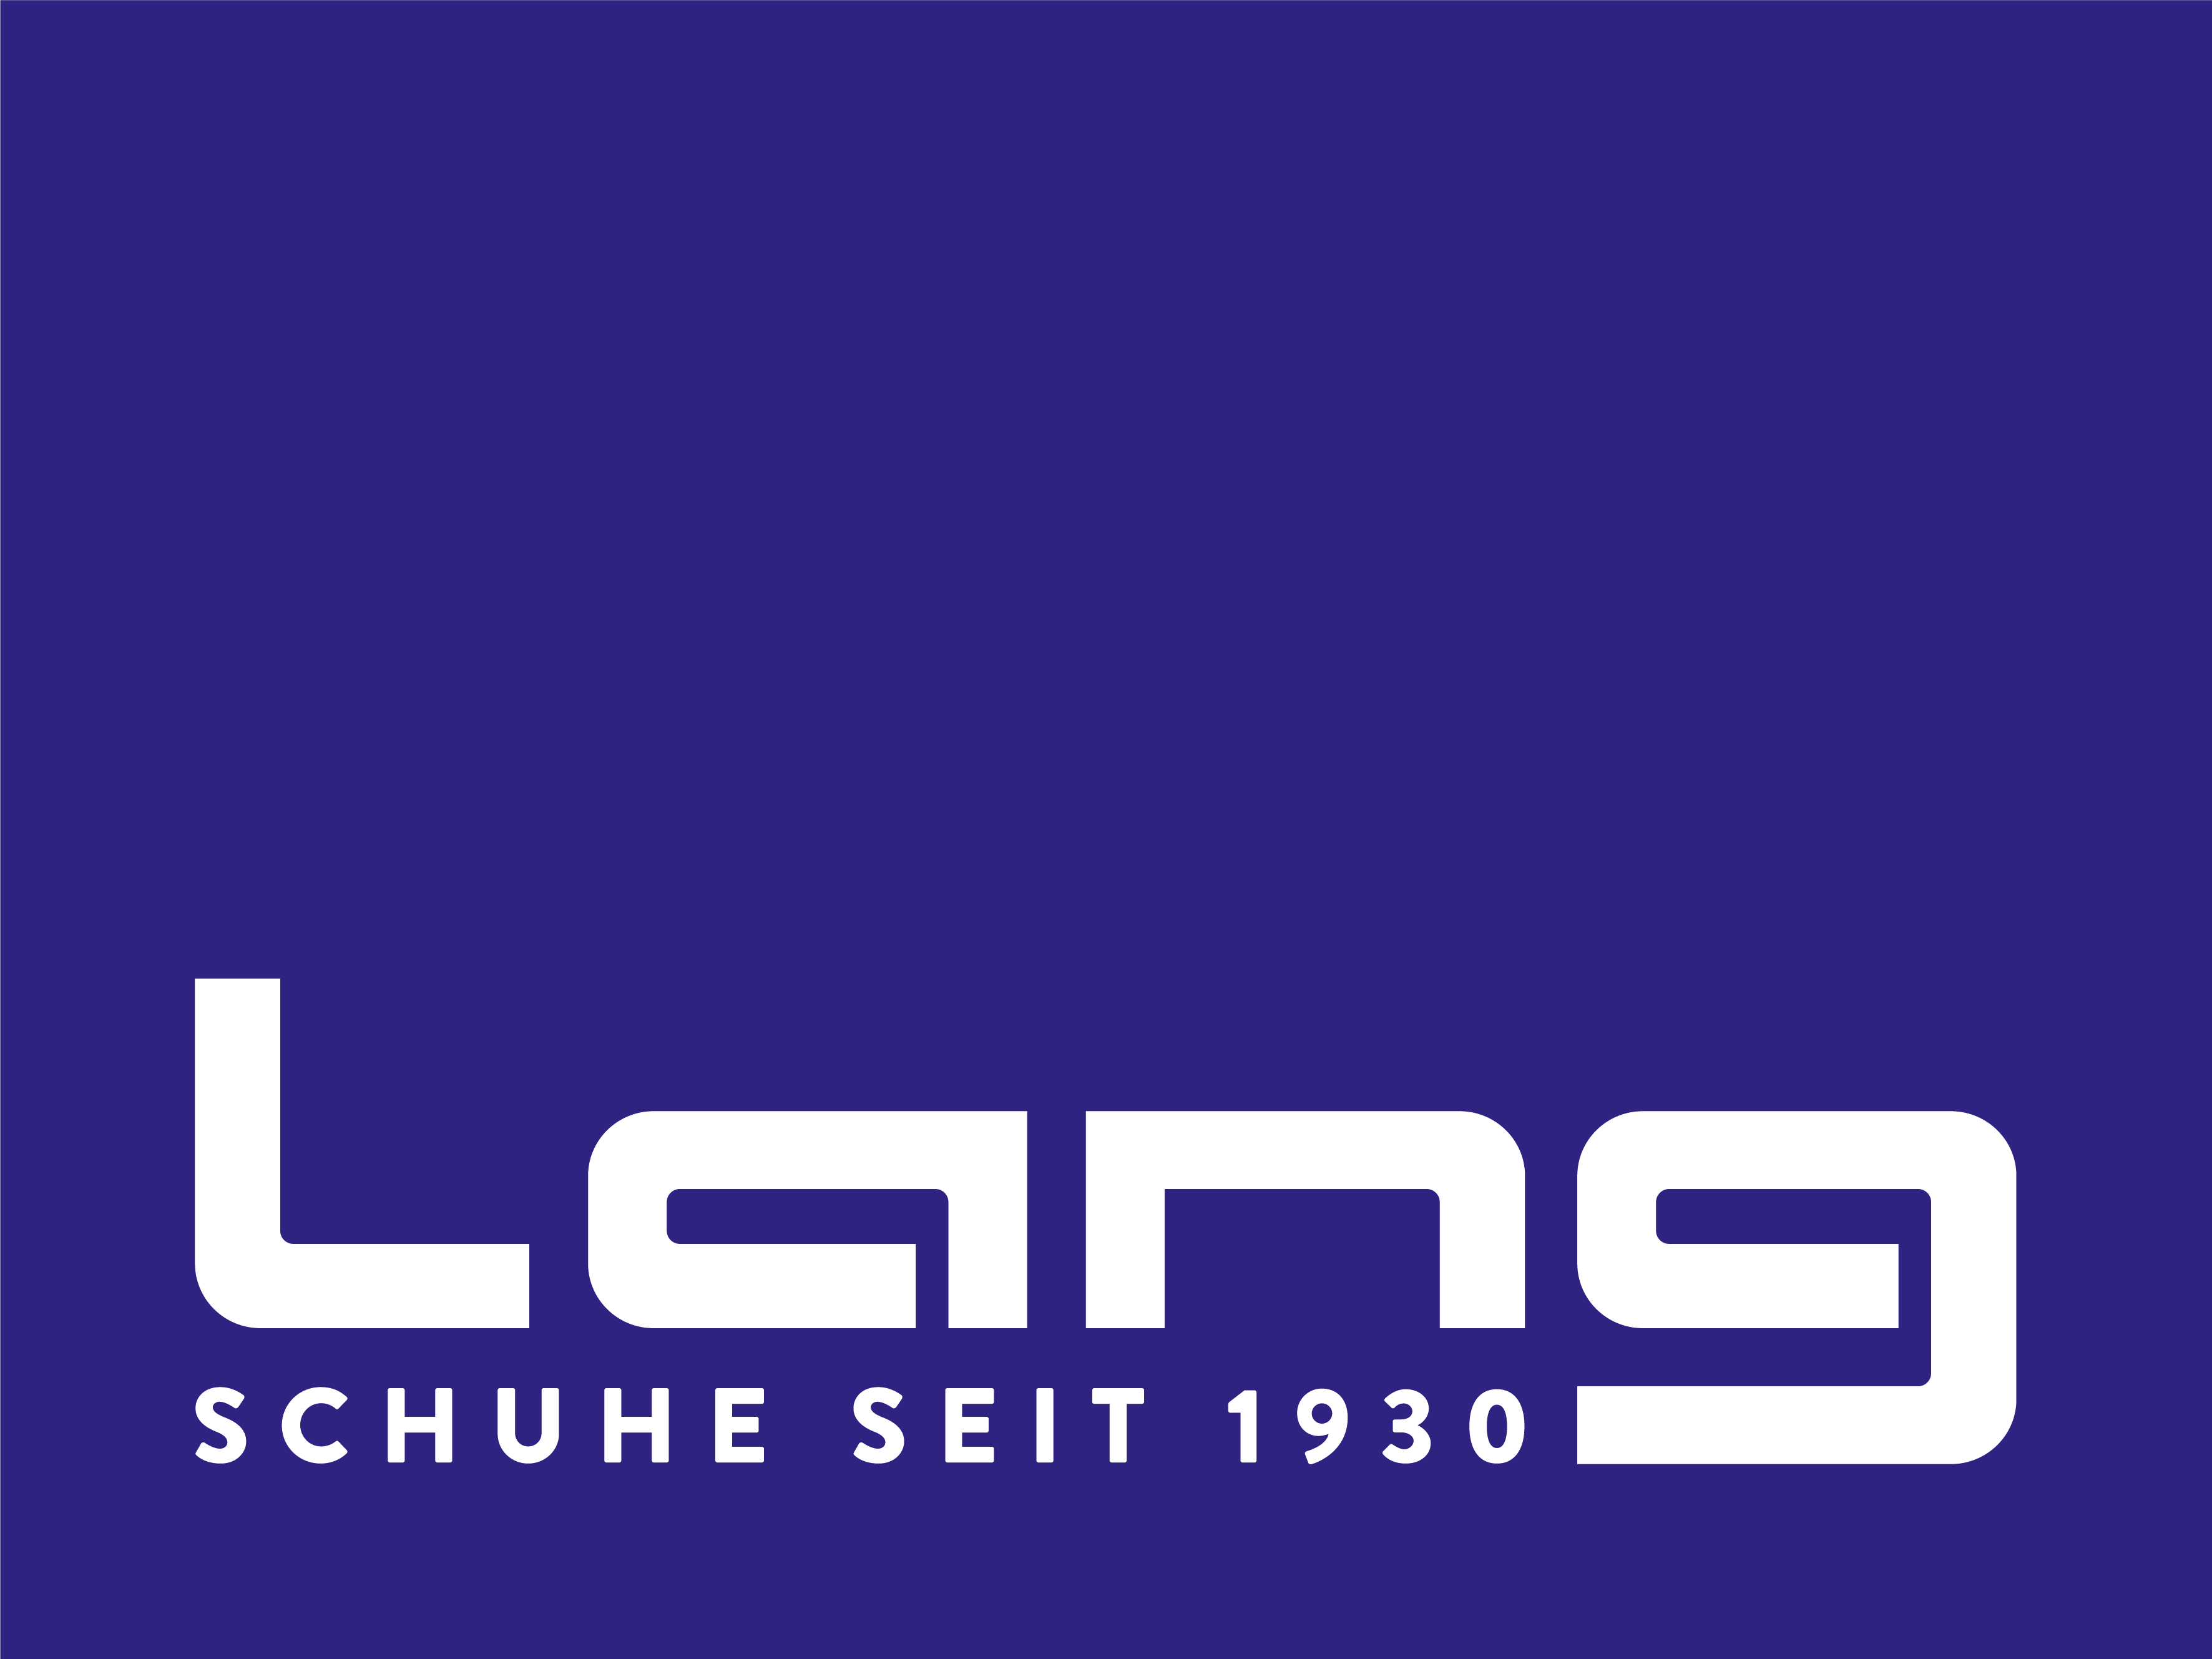 LANG - Schuhe seit 1930